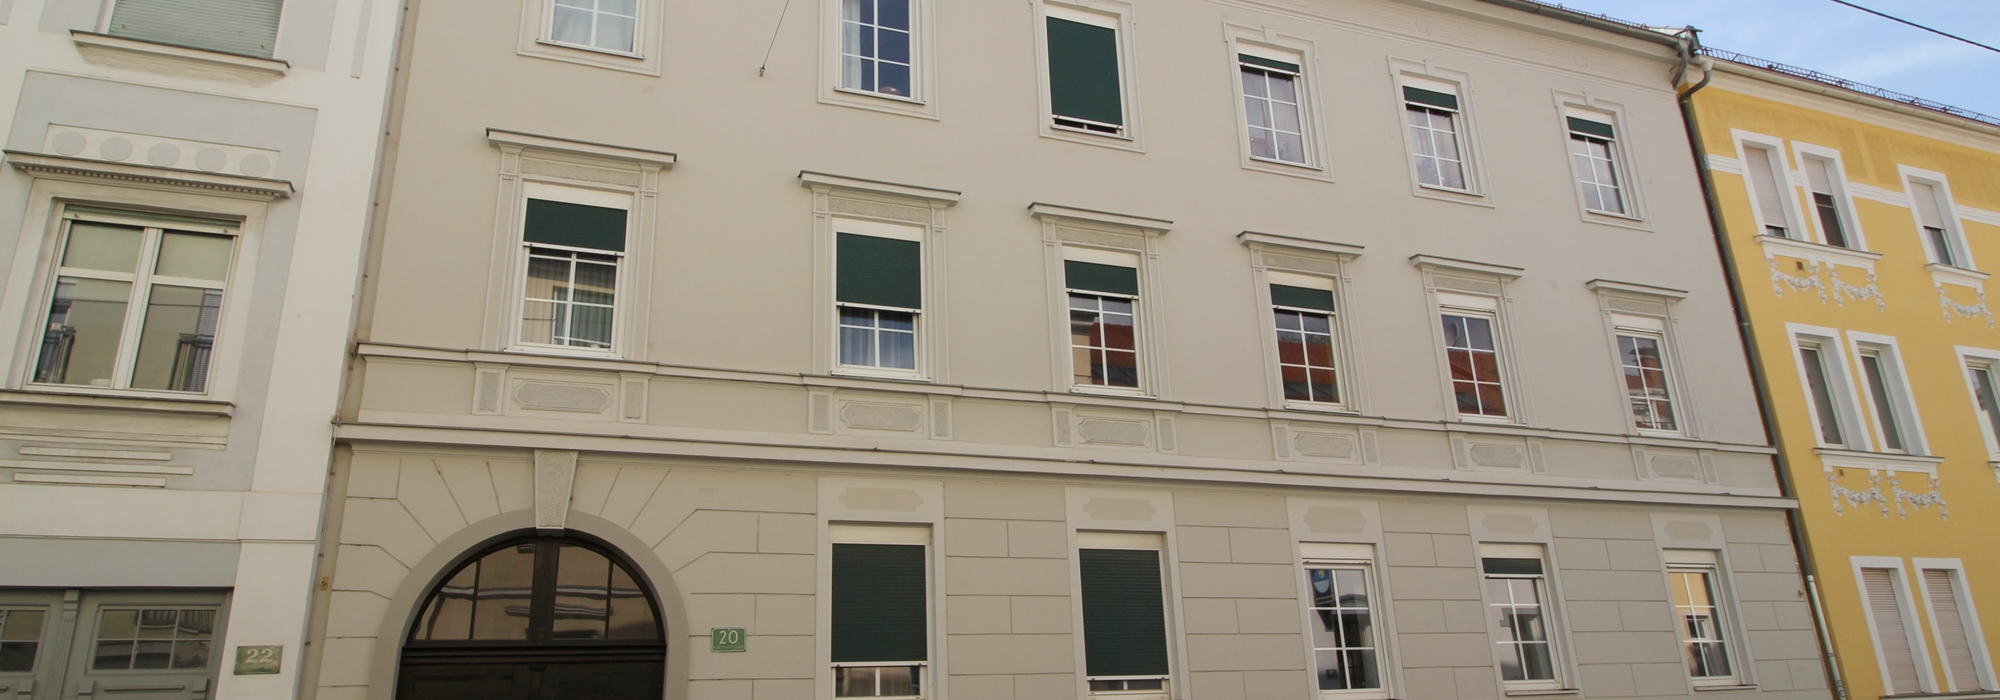 Sehr schöne 2-Zimmer Maisonette mit 58,15 m² in Alt Eggenberg mit kleiner Terrasse zu vermieten